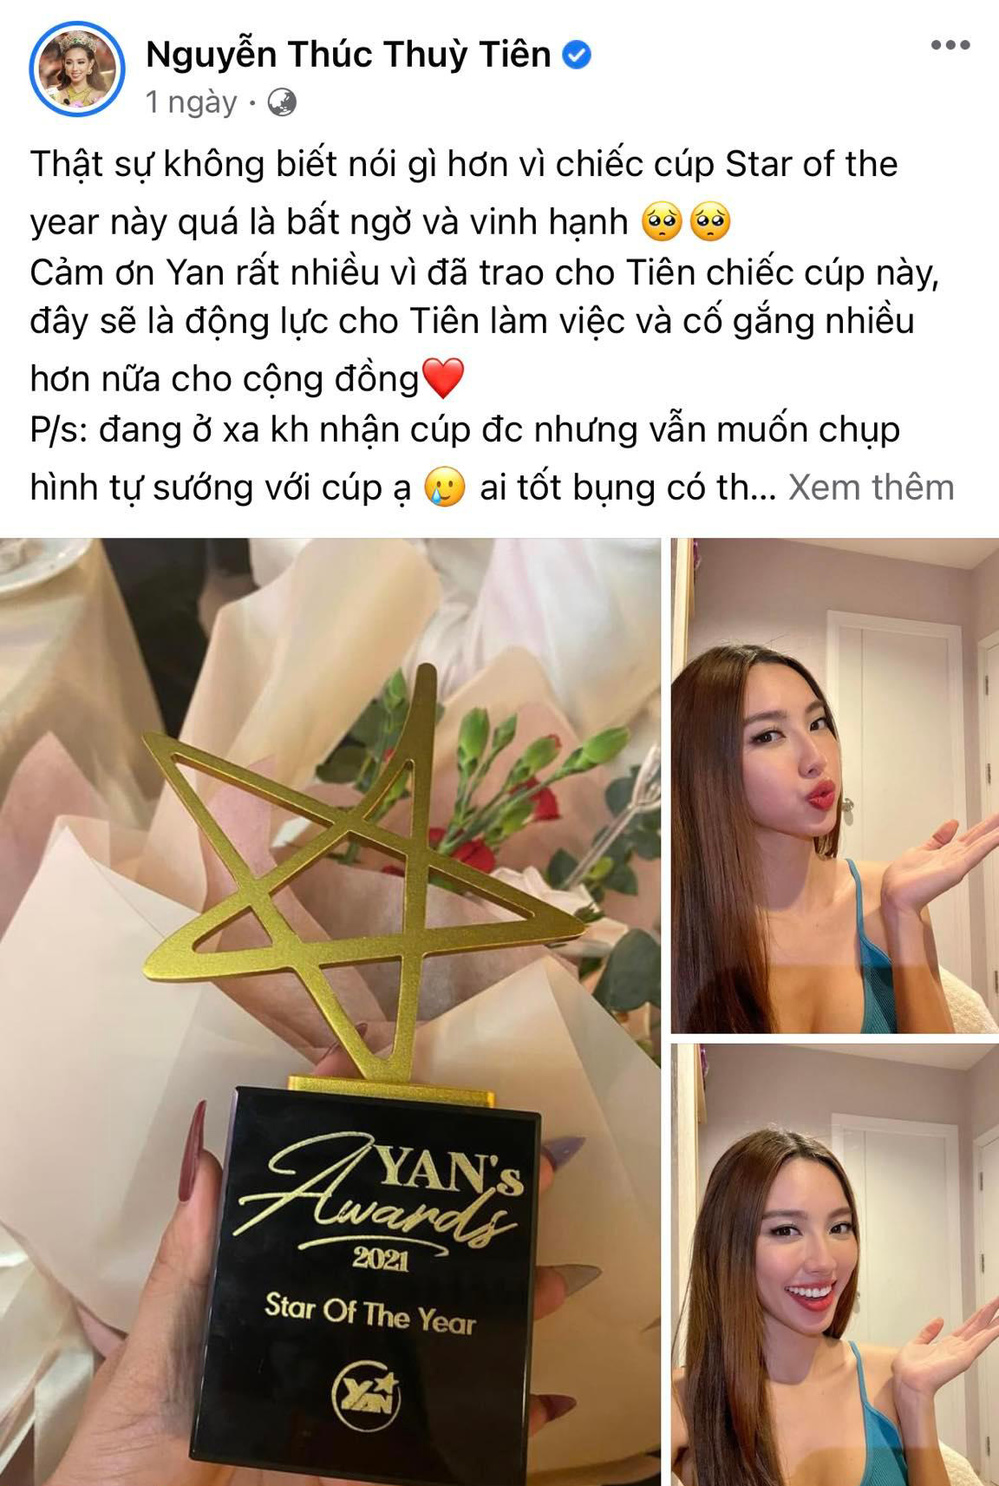  
Miss Grand International 2021 rất hào hứng khi được nhận giải thưởng của YAN. (Ảnh: Chụp từ FB Nguyễn Thúc Thùy Tiên) - Tin sao Viet - Tin tuc sao Viet - Scandal sao Viet - Tin tuc cua Sao - Tin cua Sao